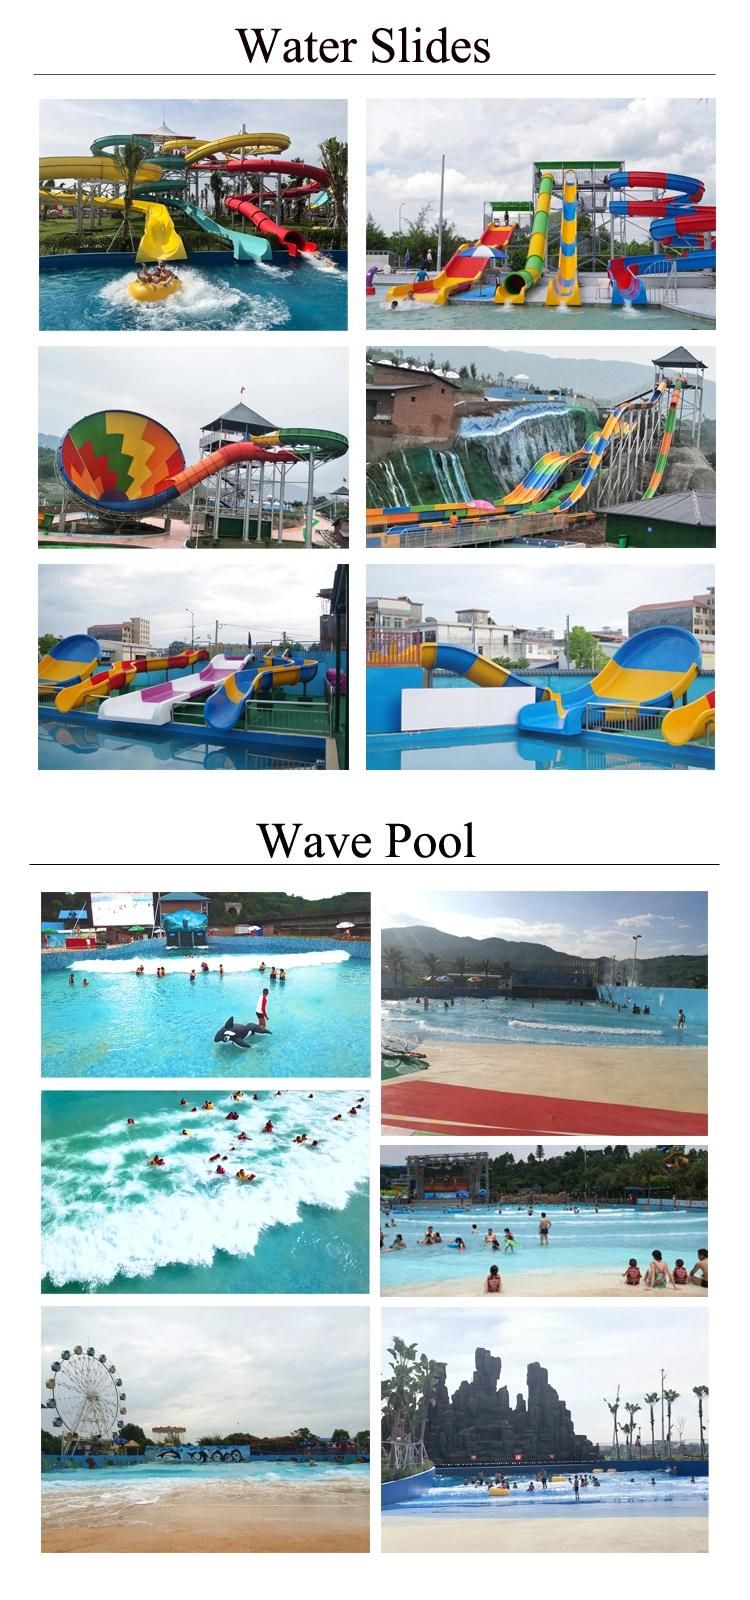 Fiberglass Colorful Racing Water Slide for Resort/ Park/ Pool